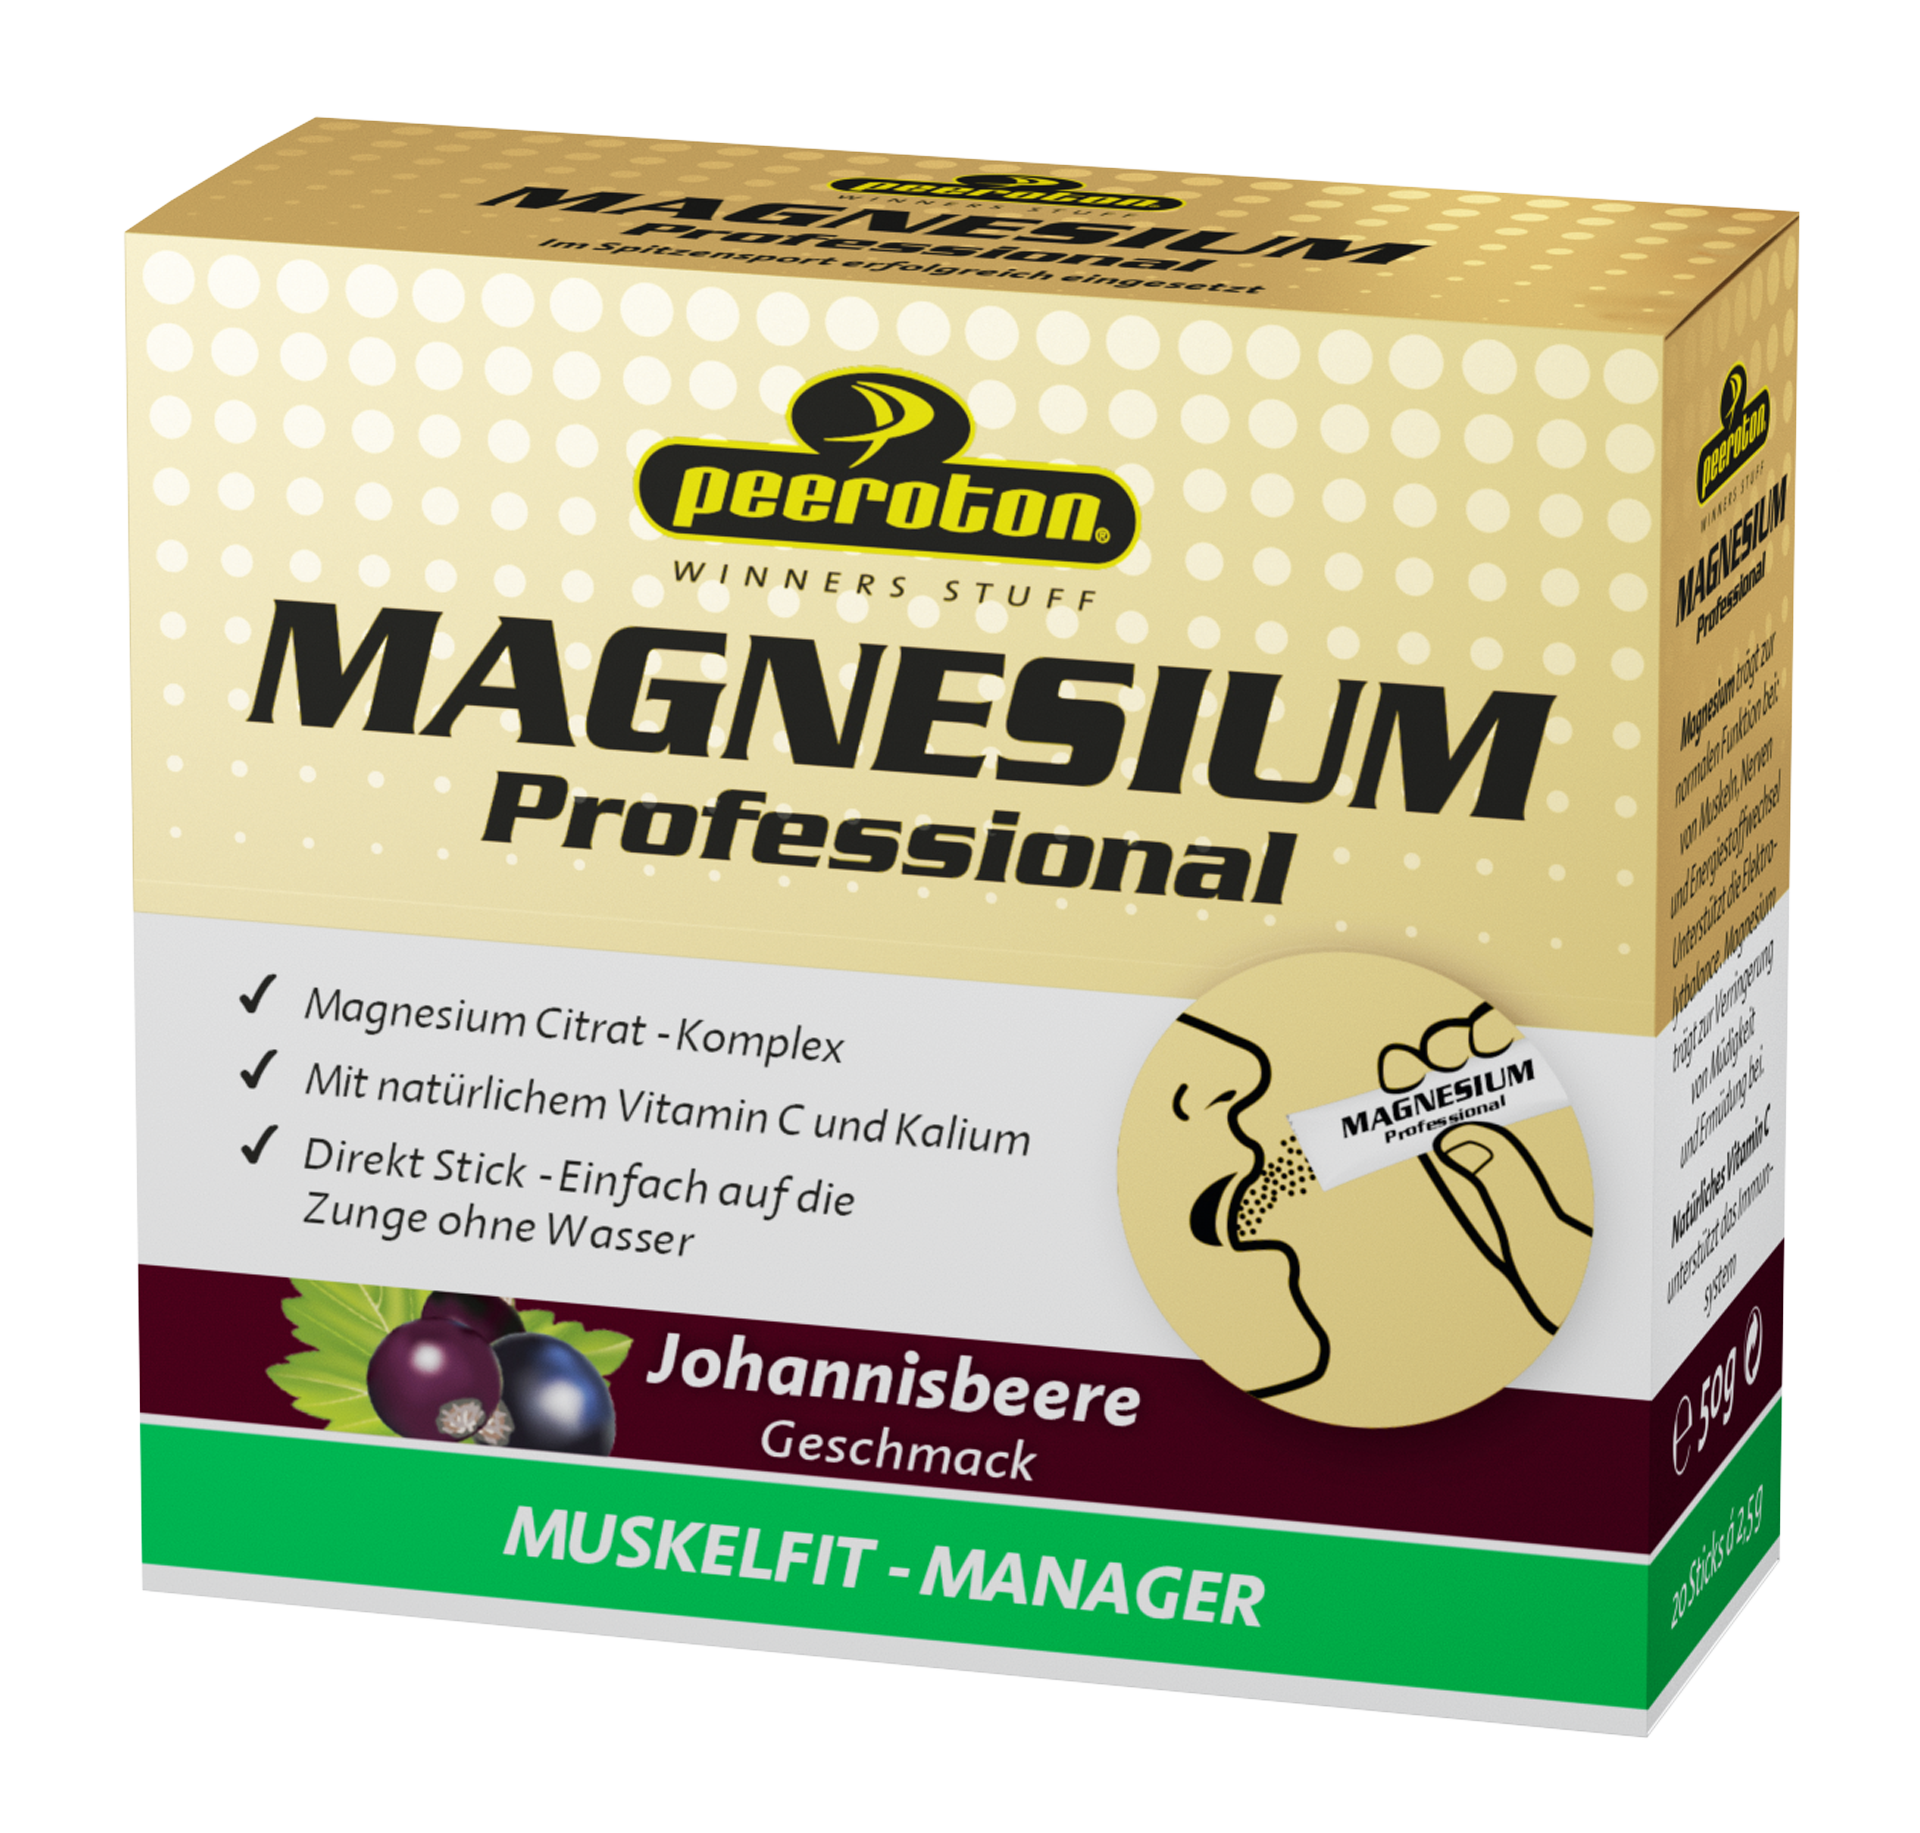 MAGNESIUM Professional - 20 Sticks